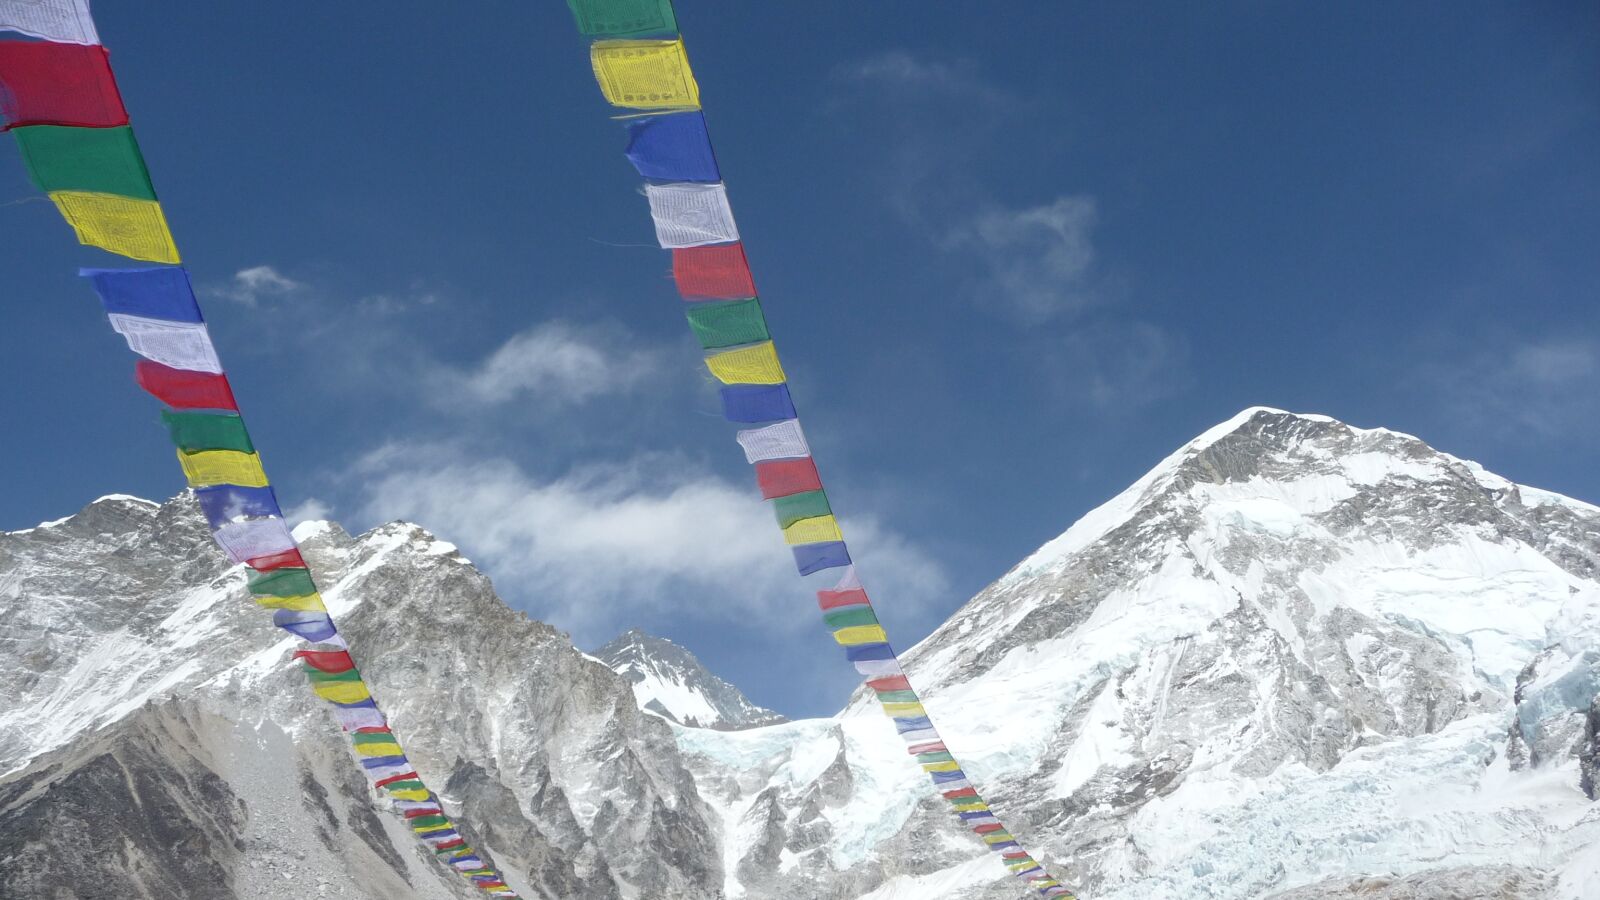 Panasonic Lumix DMC-TZ5 sample photo. Everest base camp, nepal photography